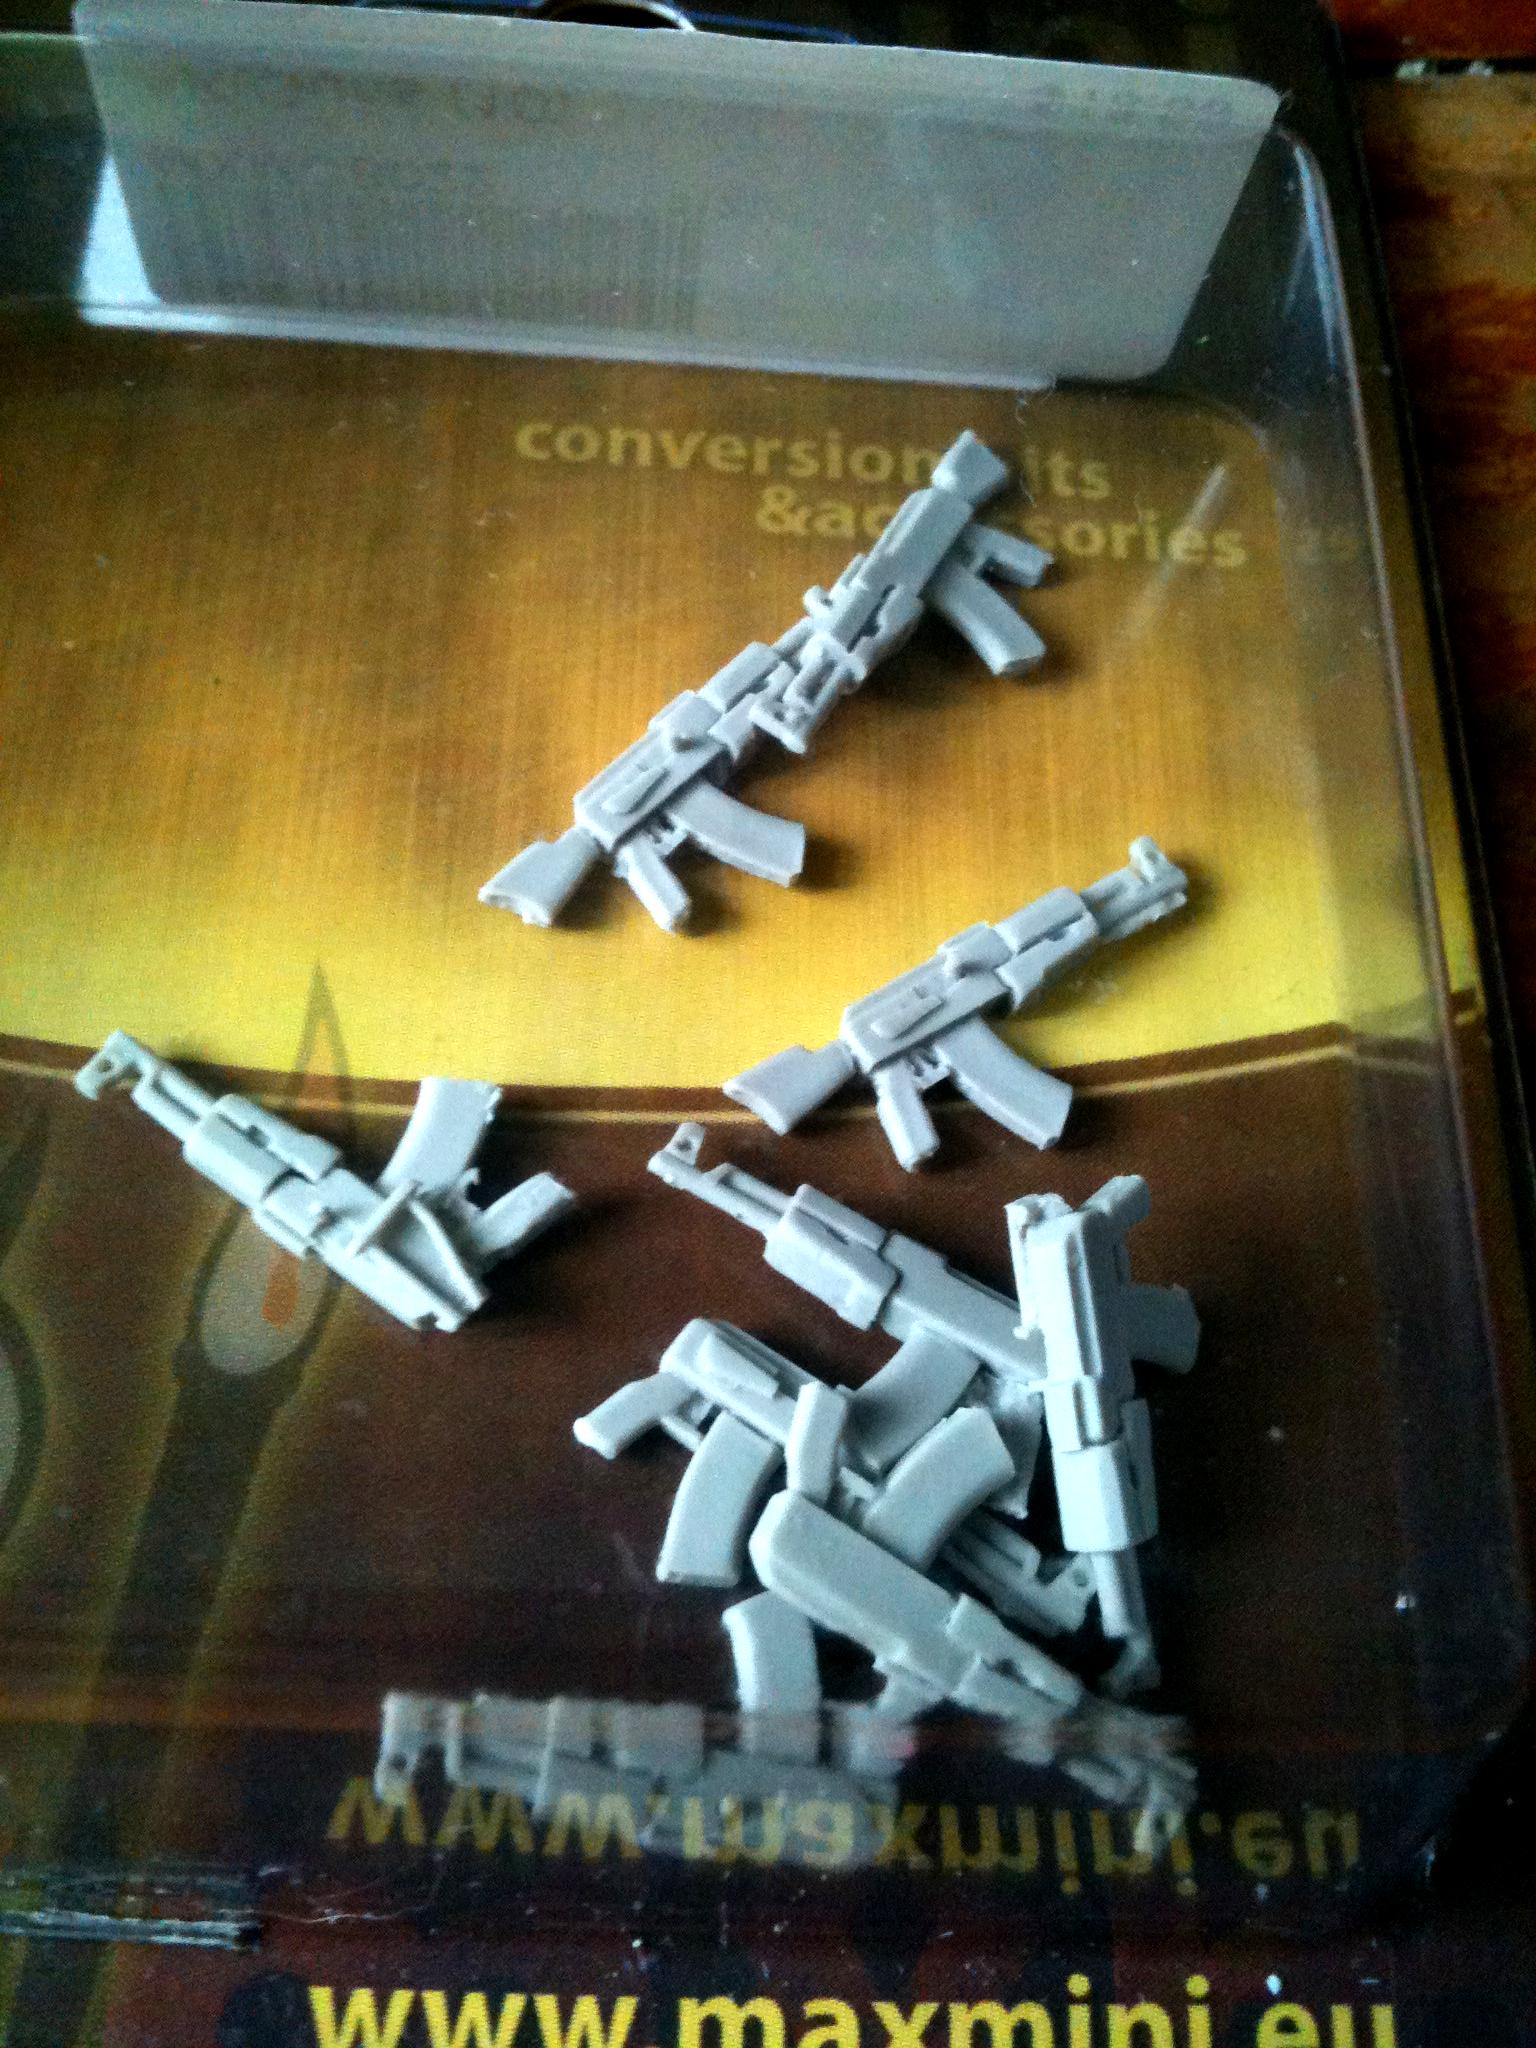 Ak-47's, Draganovs, 10 ak47s